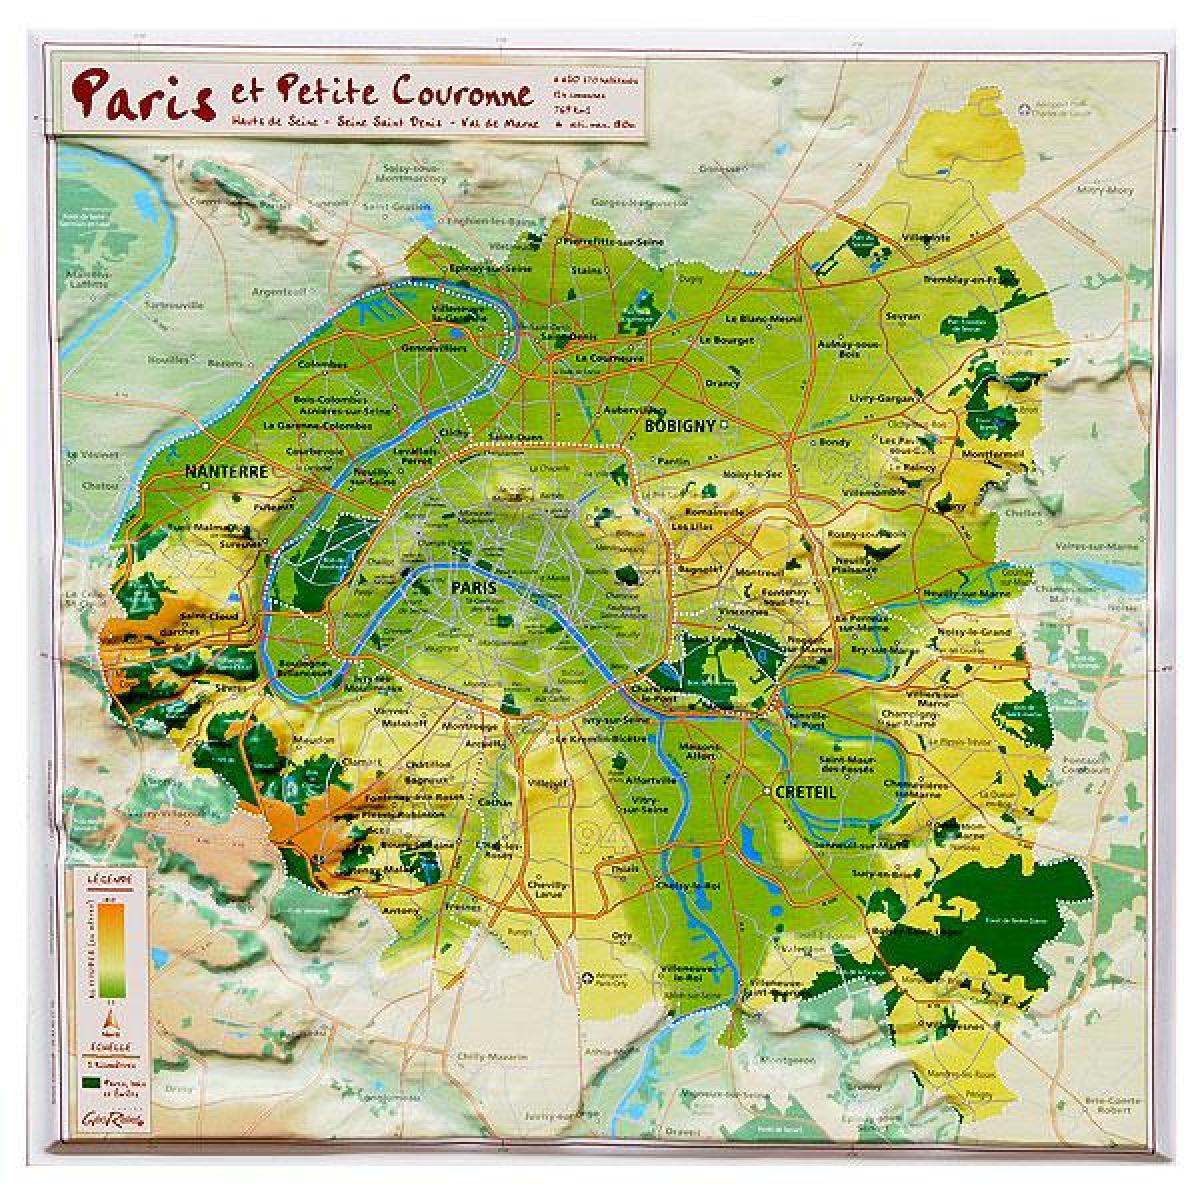 Kart av lettelse i Paris